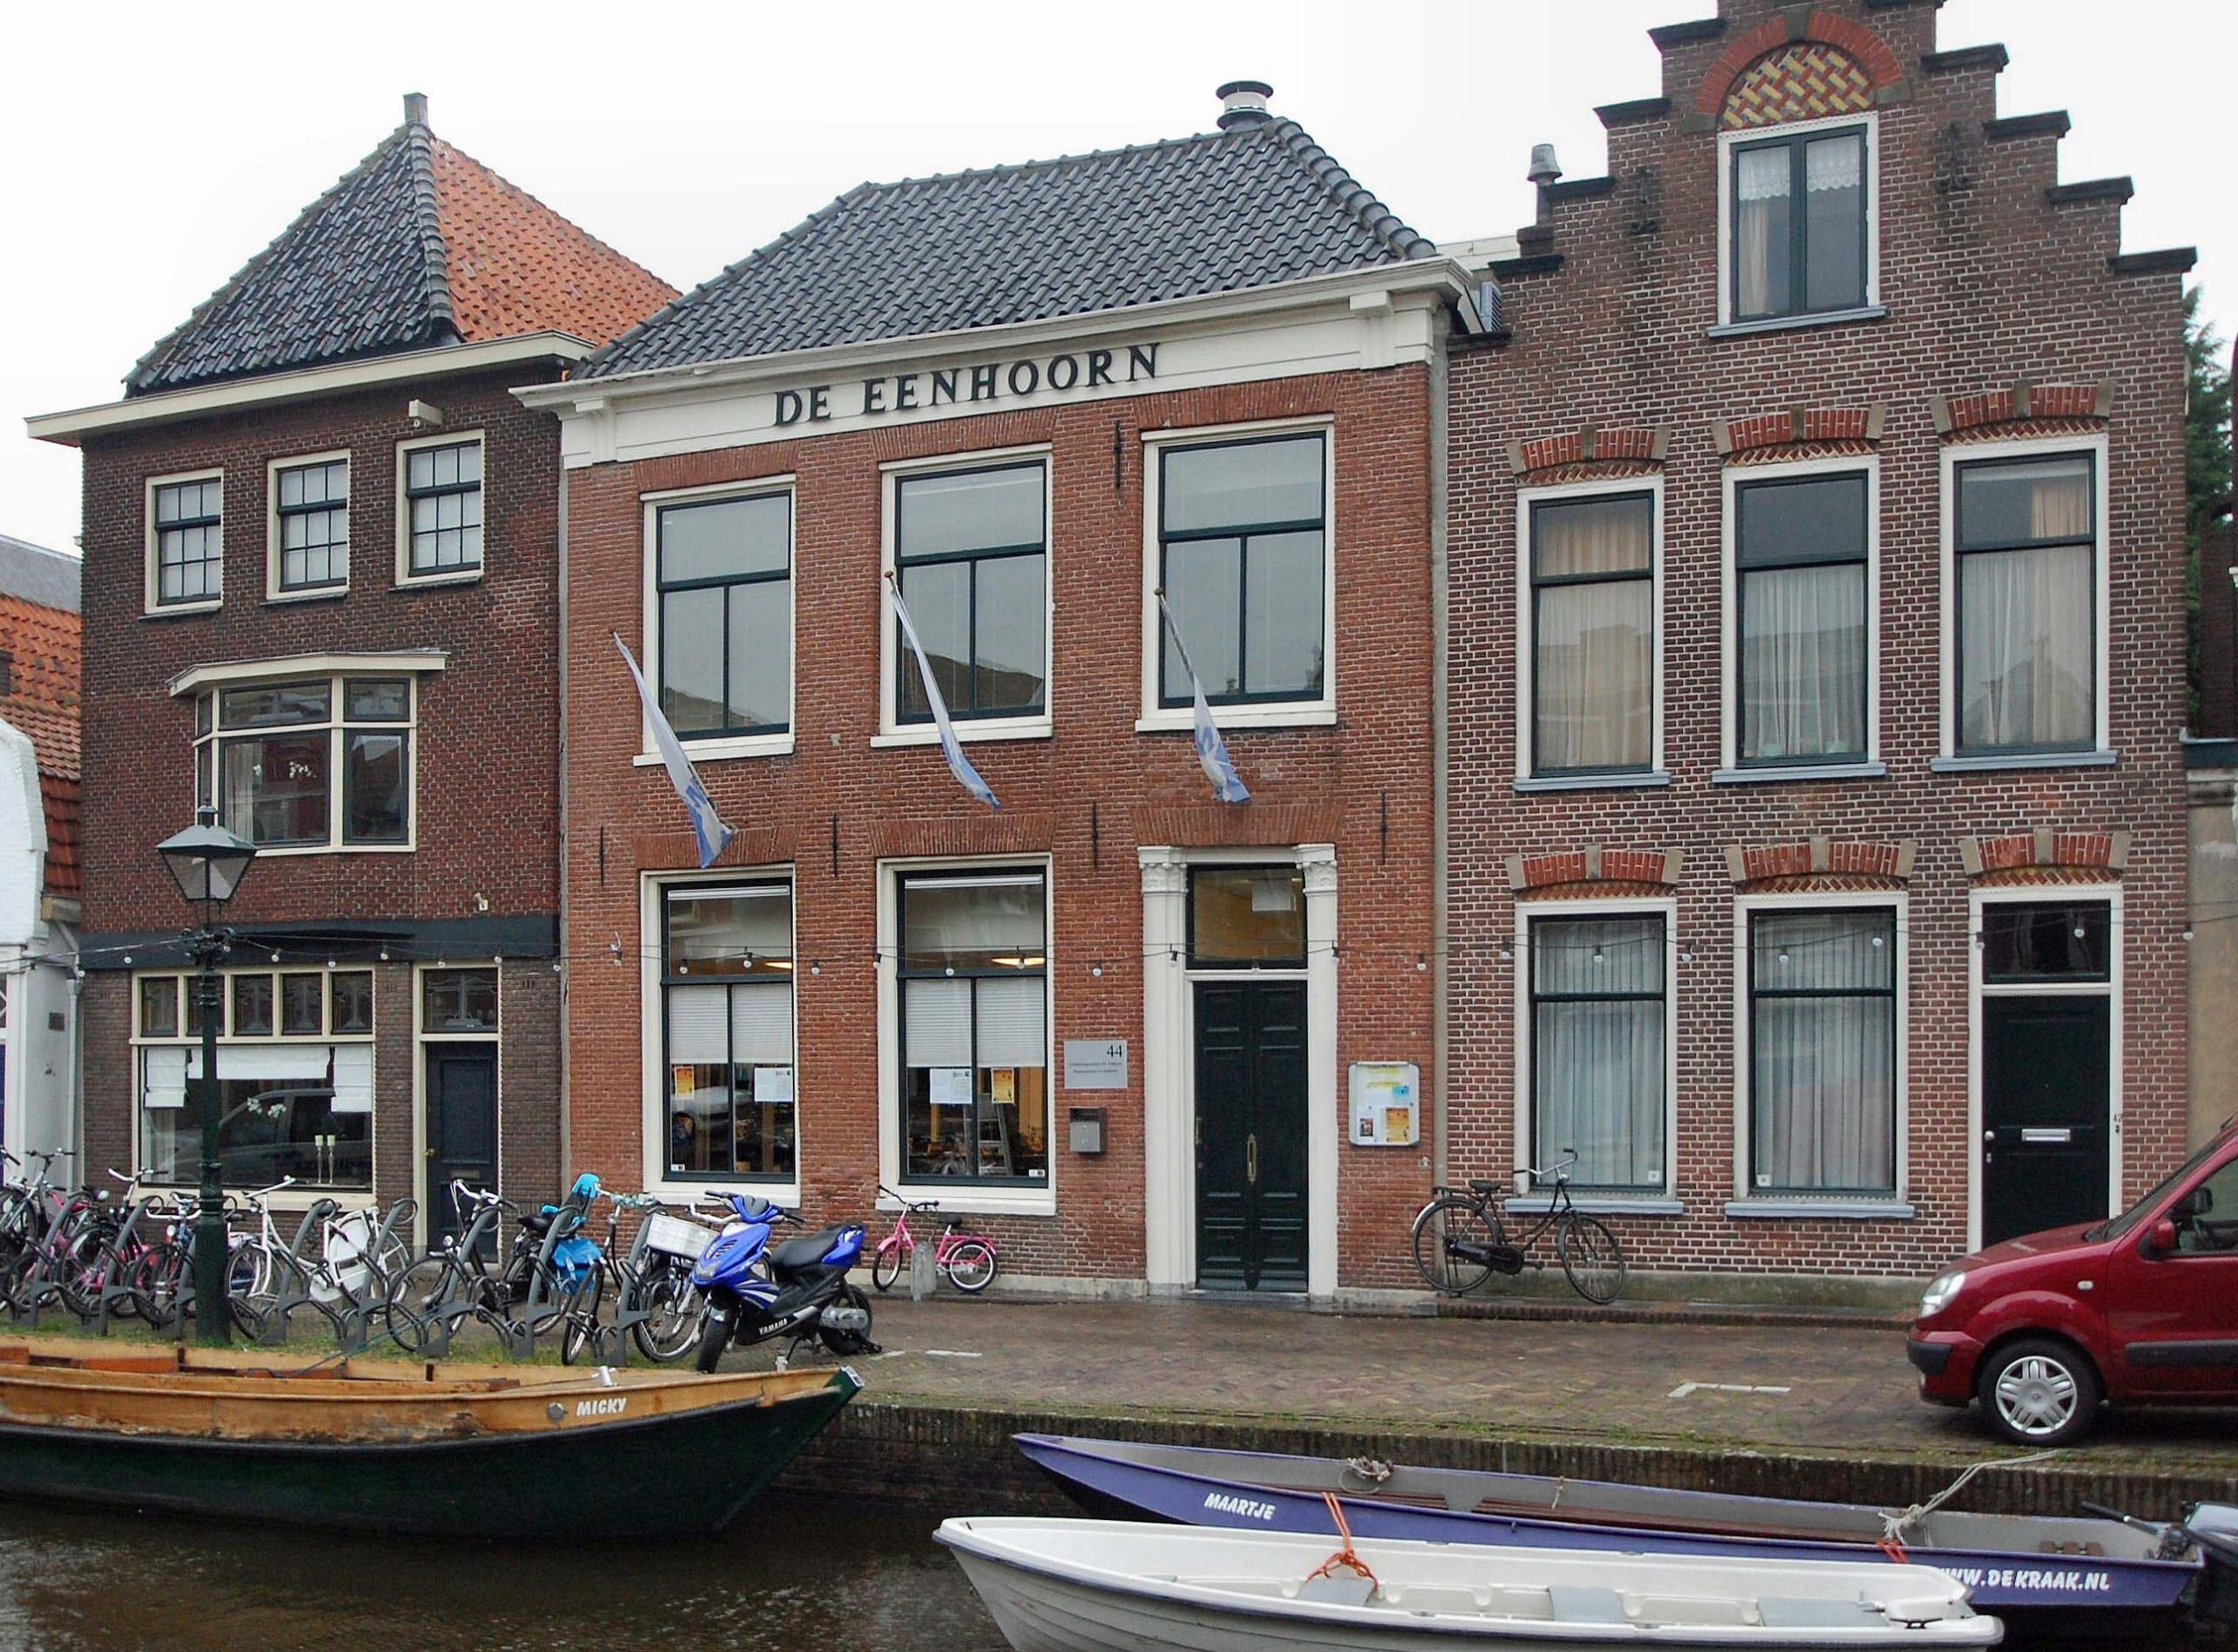 De Eenhoorn, Alkmaar-Wikipedia - Steven van der Wal